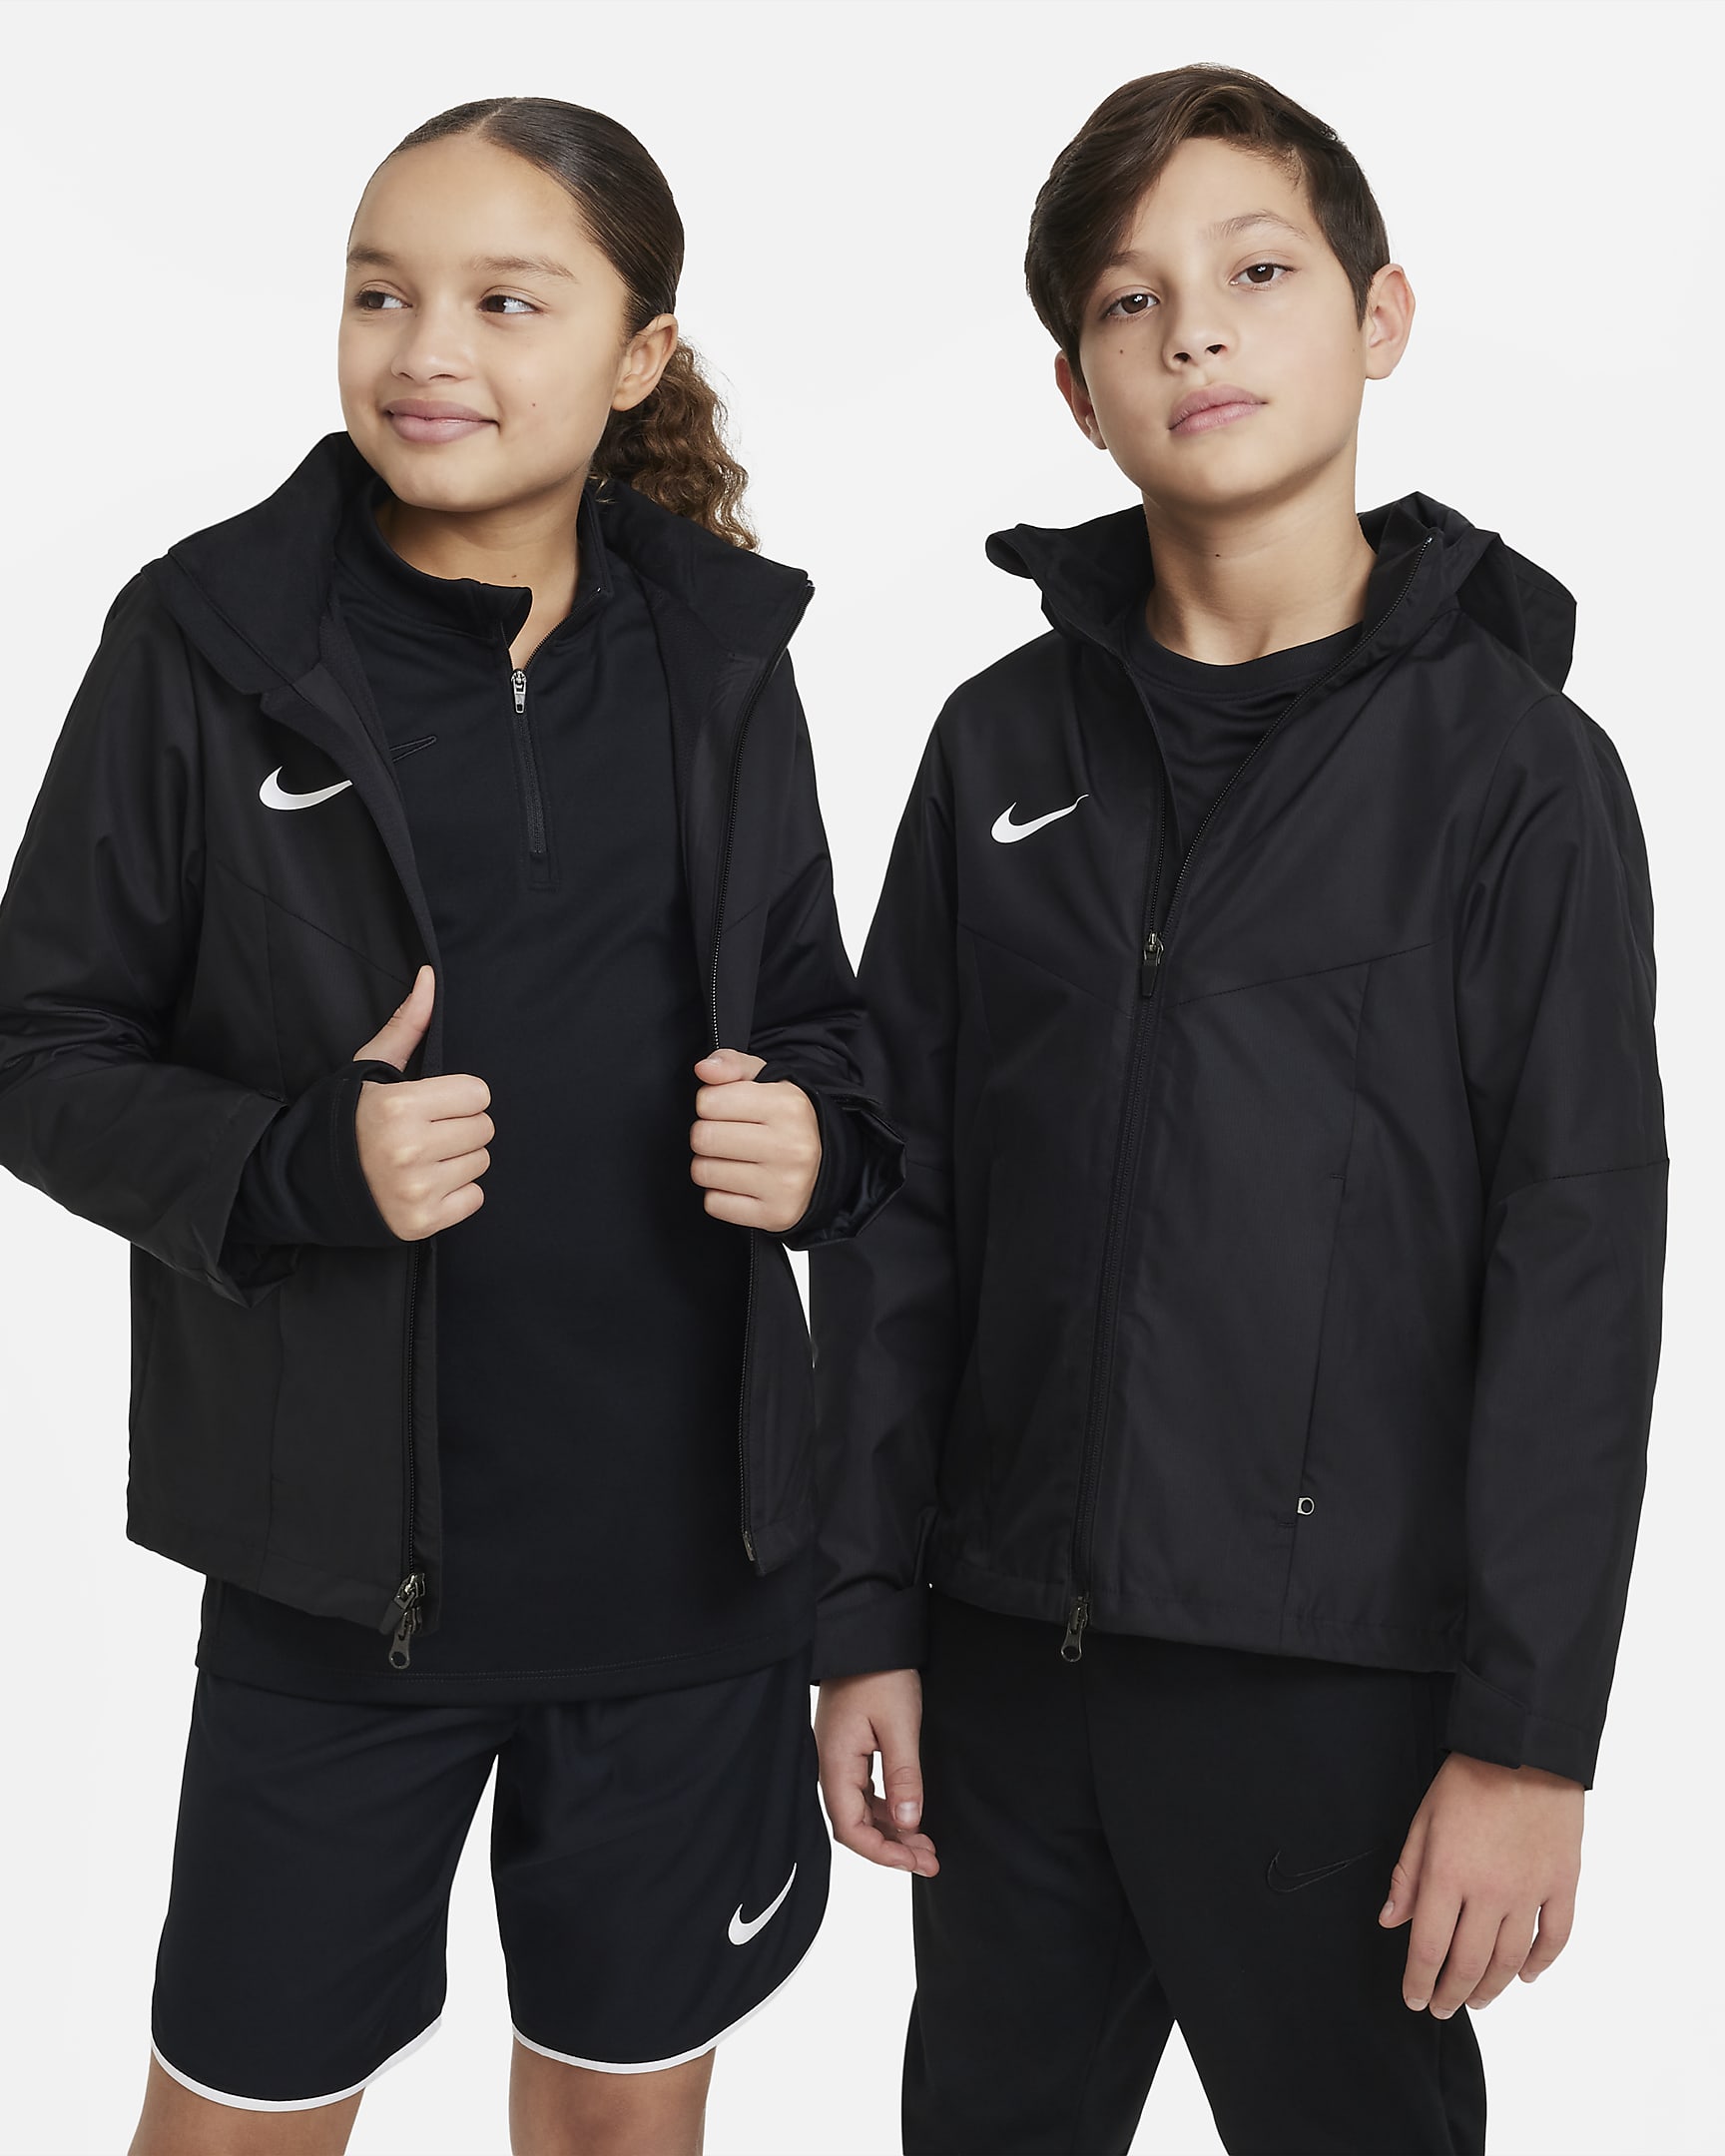 Nike Storm-FIT Academy23 futball-esőkabát nagyobb gyerekeknek - Fekete/Fehér